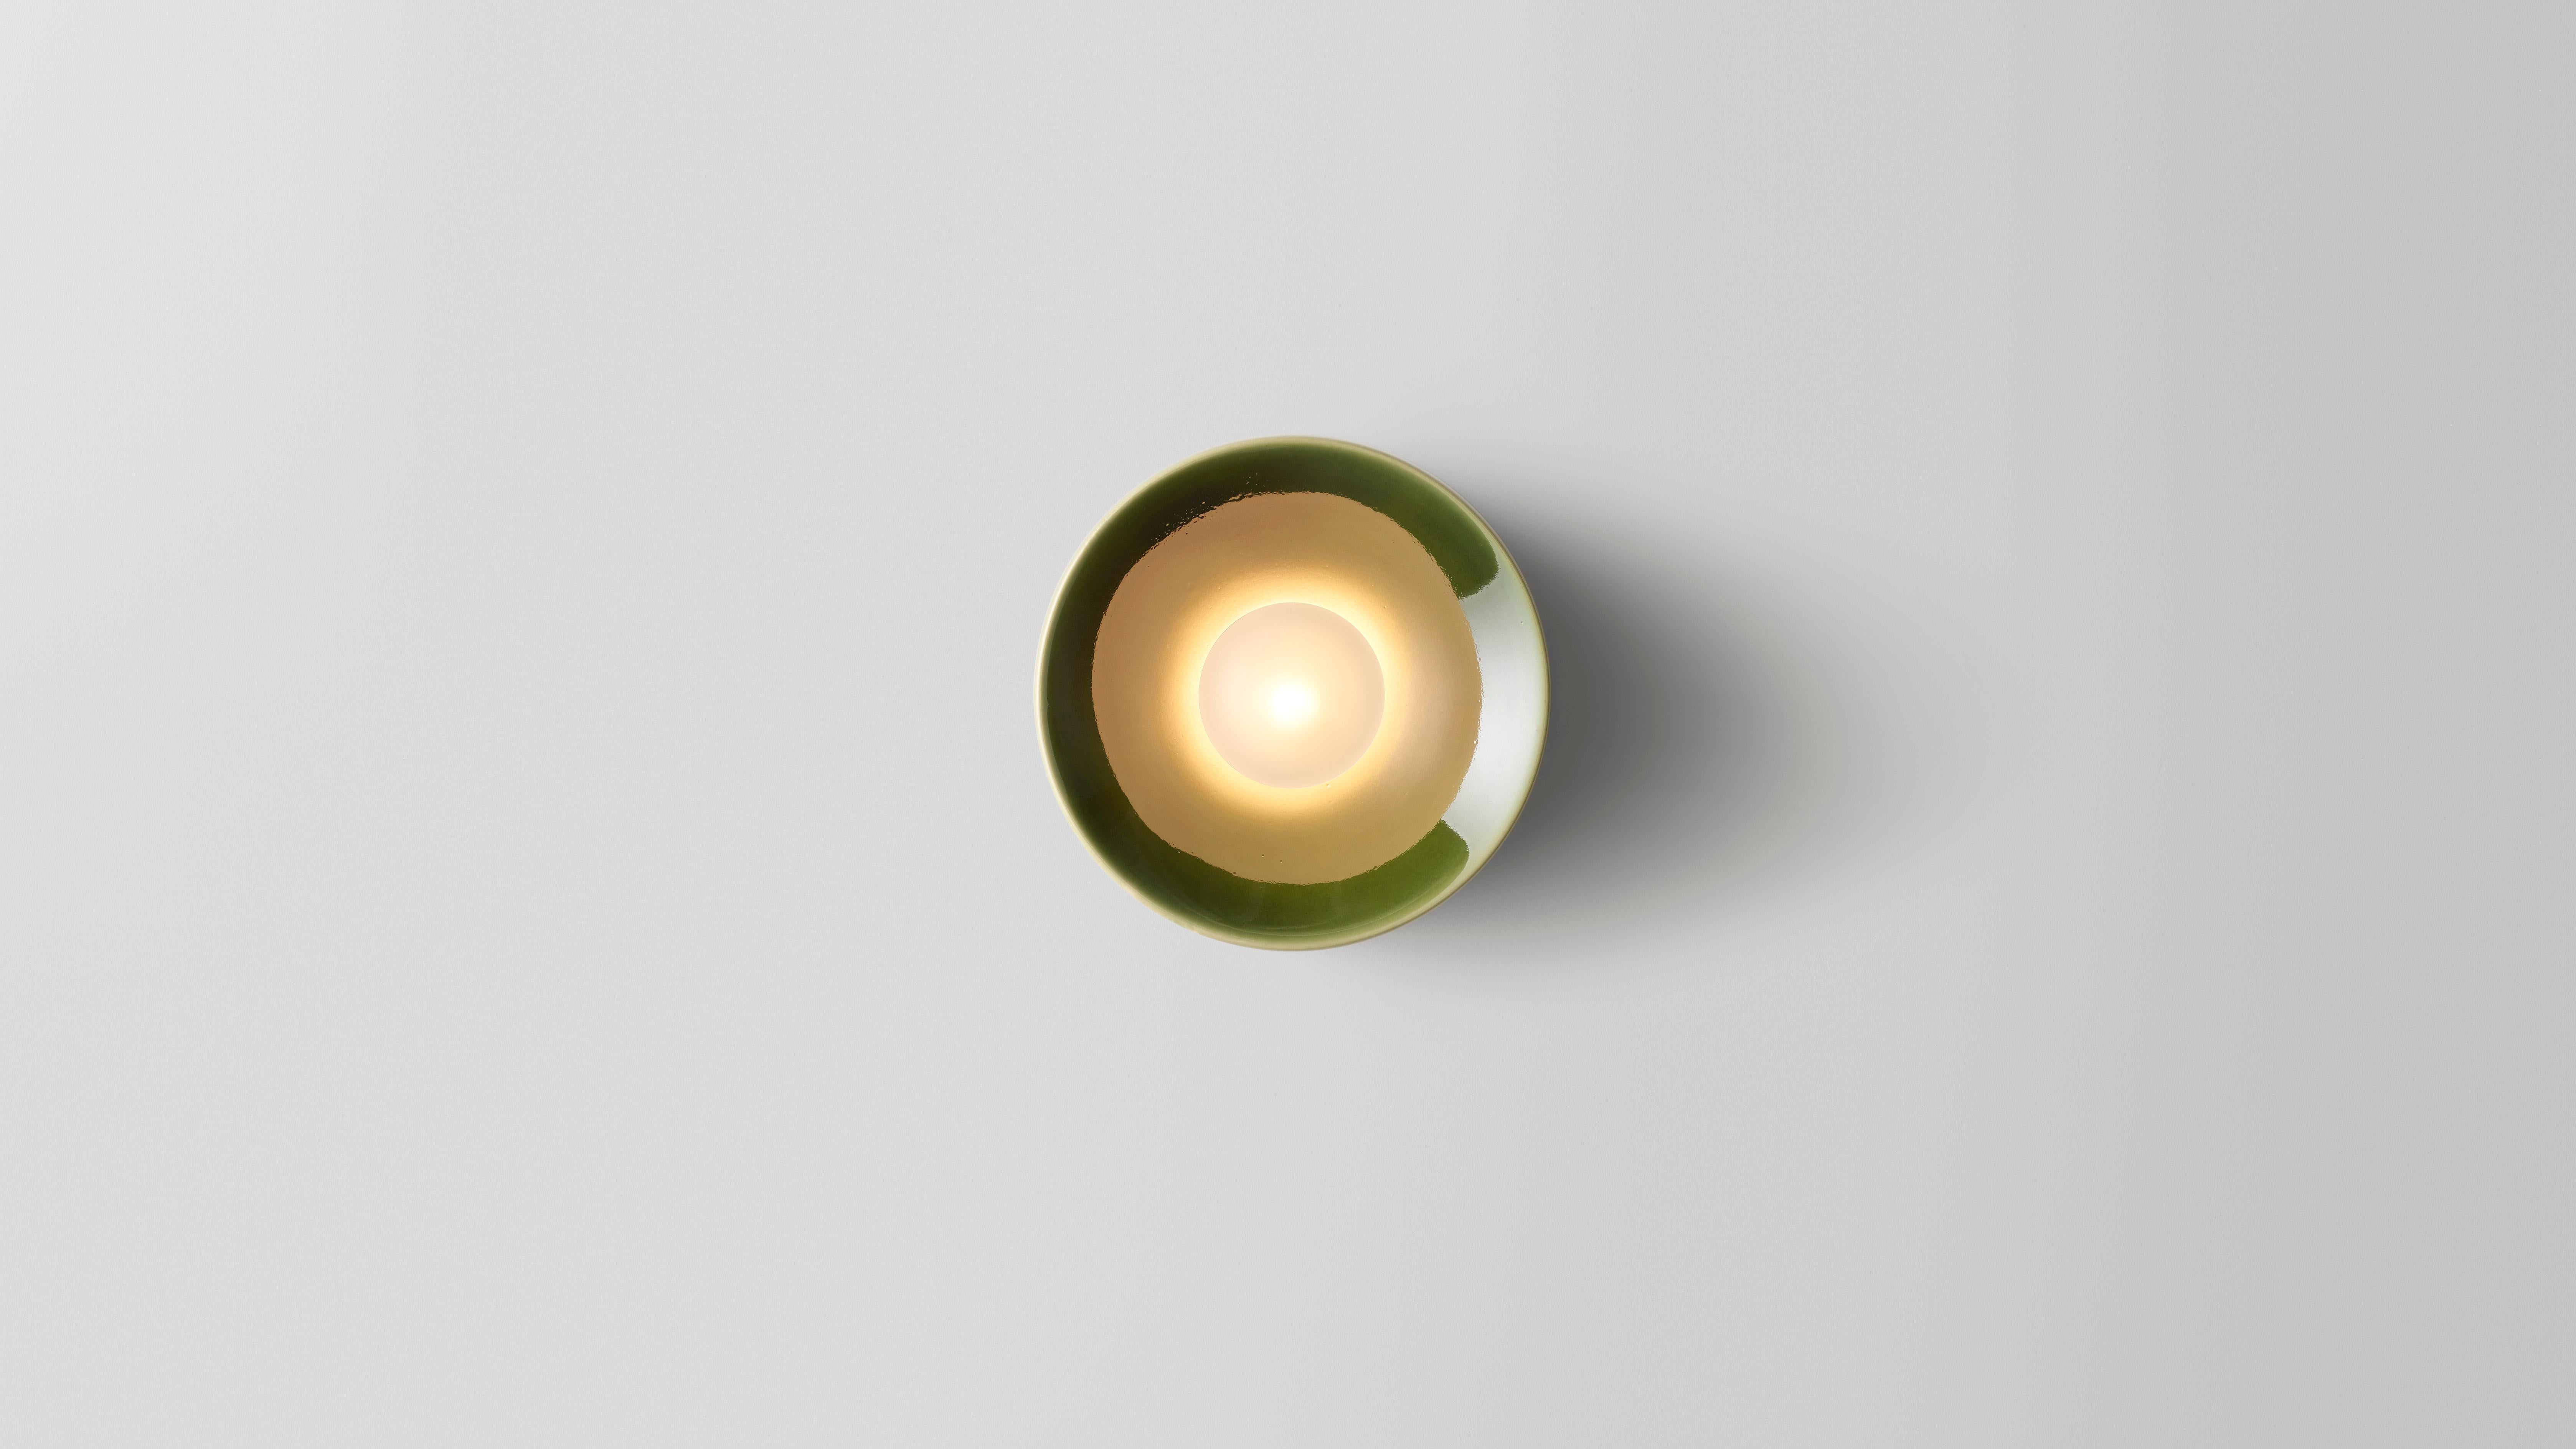 Anton grüne keramiklampe von Volker Haug
Abmessungen: Ø 18 x T 10 cm. 
MATERIAL: Gusskeramik

Auch in verschiedenen Größen erhältlich: Ø 8, 13 oder 18 cm. Bitte kontaktieren Sie uns.

Glasur: eine Auswahl an Farben ist verfügbar
Leuchtmittel: G9 LED